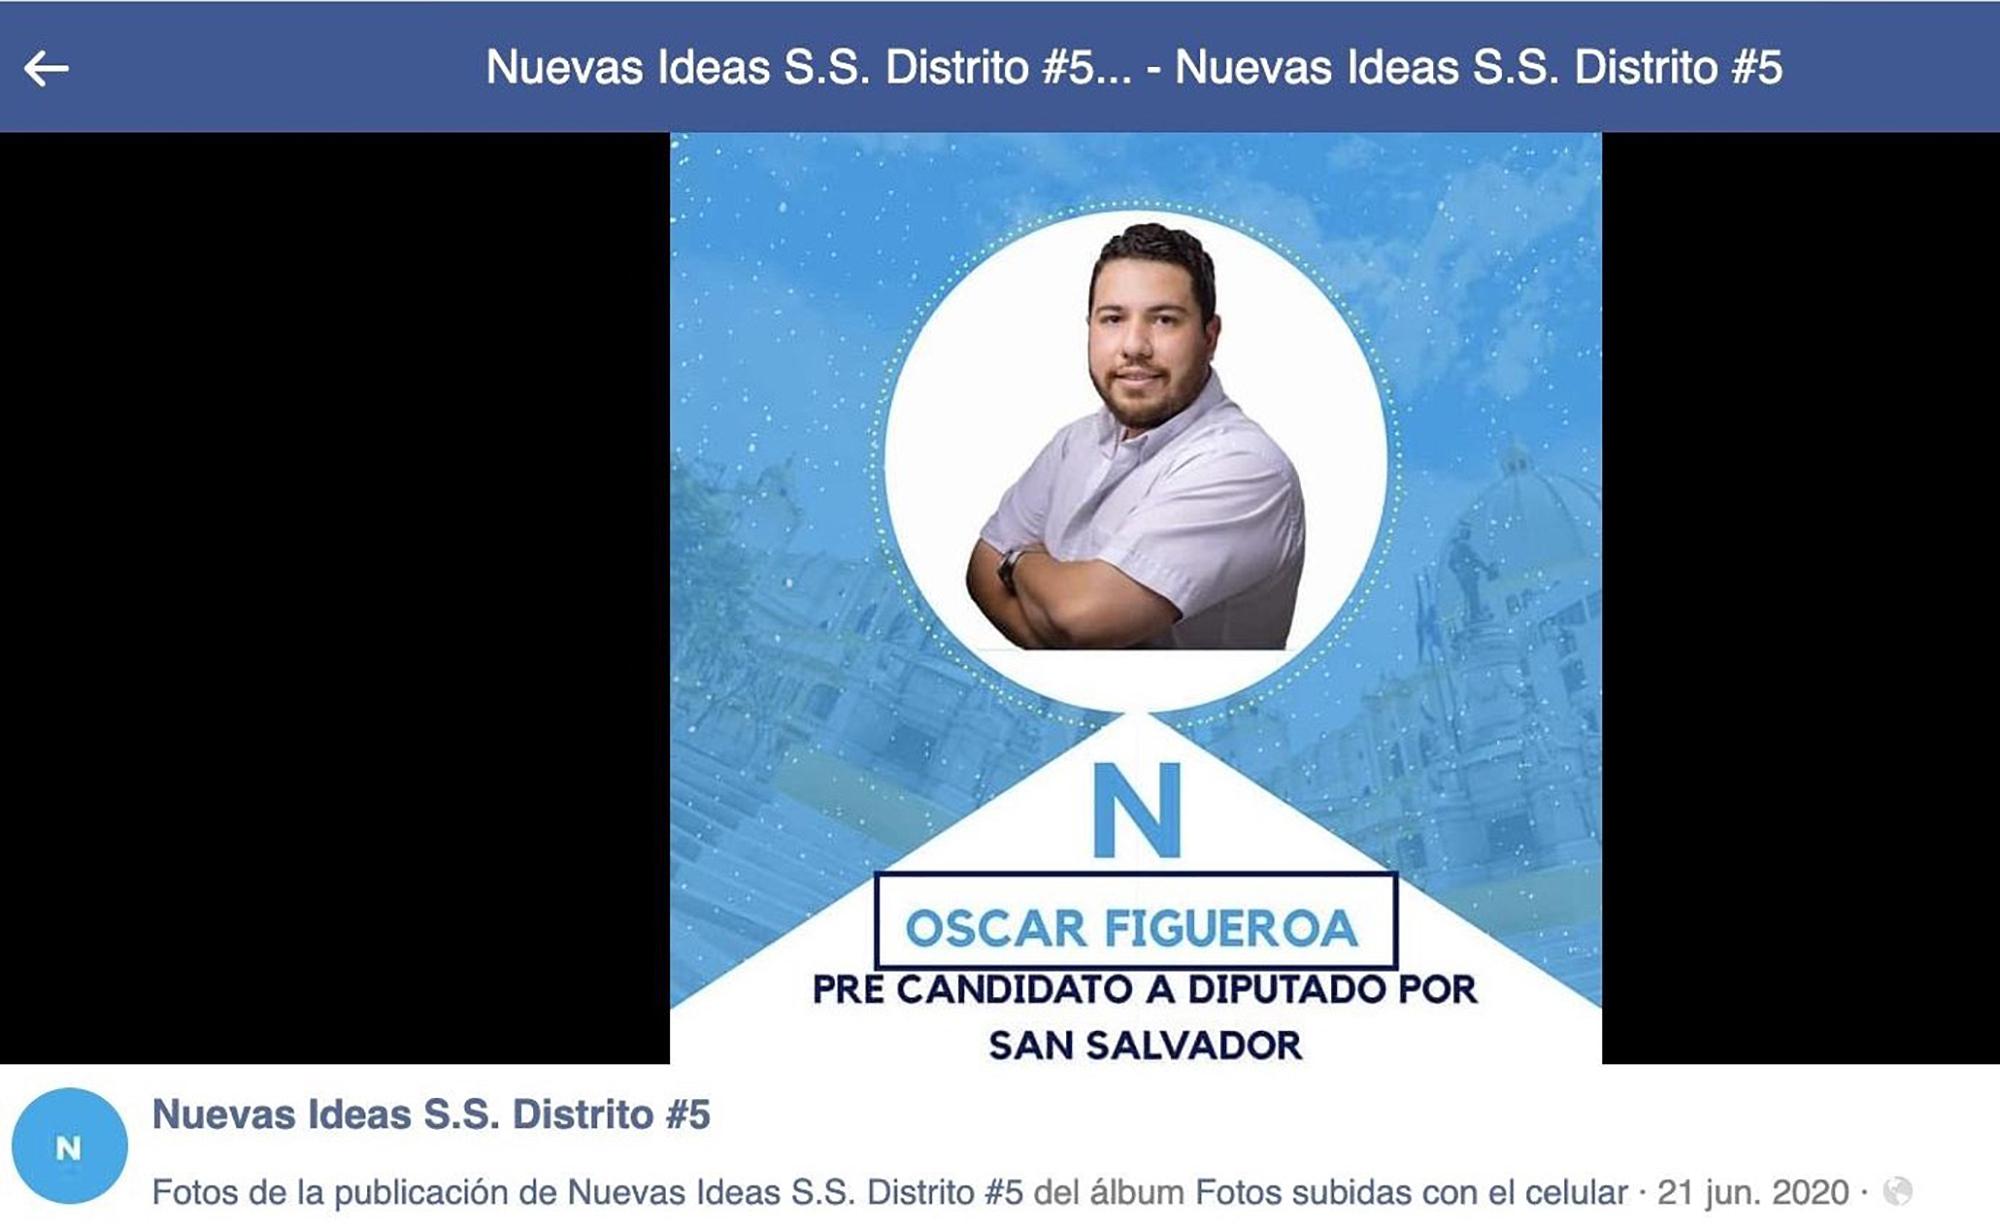 Óscar Figueroa fue precandidato a diputado por Nuevas Ideas, pero no resultó electó en las internas virtuales de julio de 2020. Foto cortesía de Nuevas Ideas.